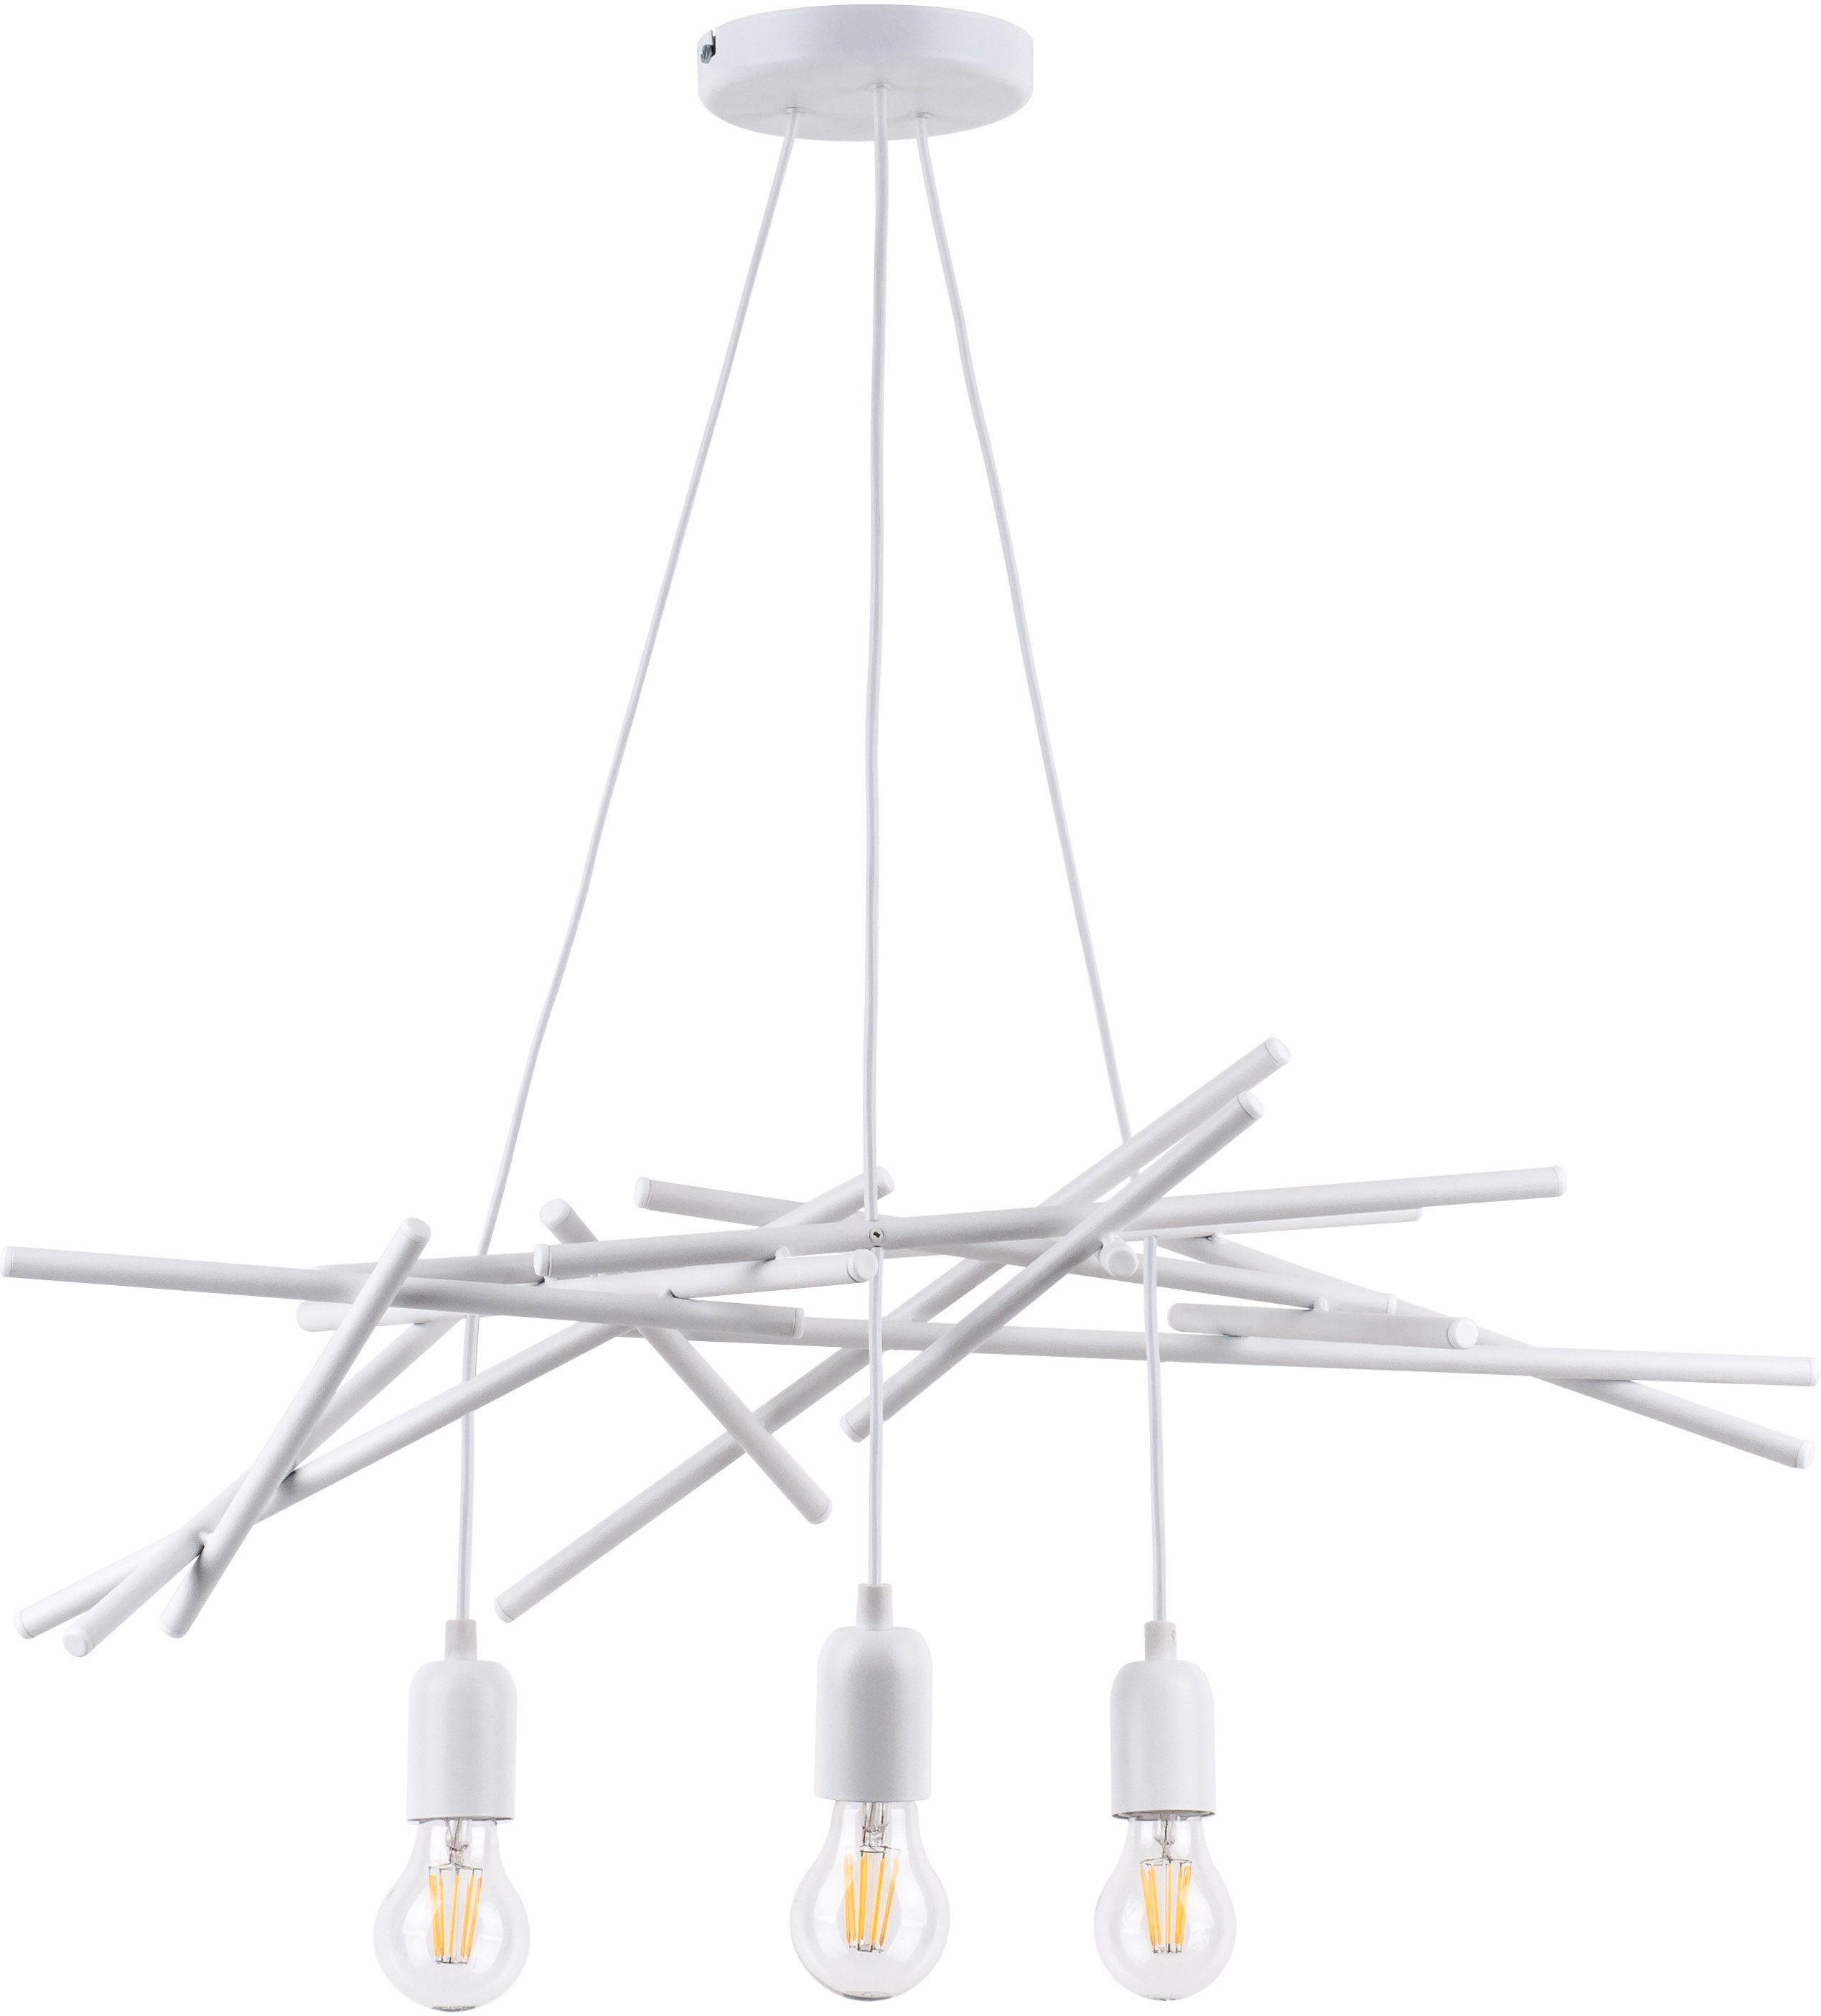 spot light hanglamp glenn van metaal, origineel design, bijpassende lm e27, made in europe (1 stuk) wit